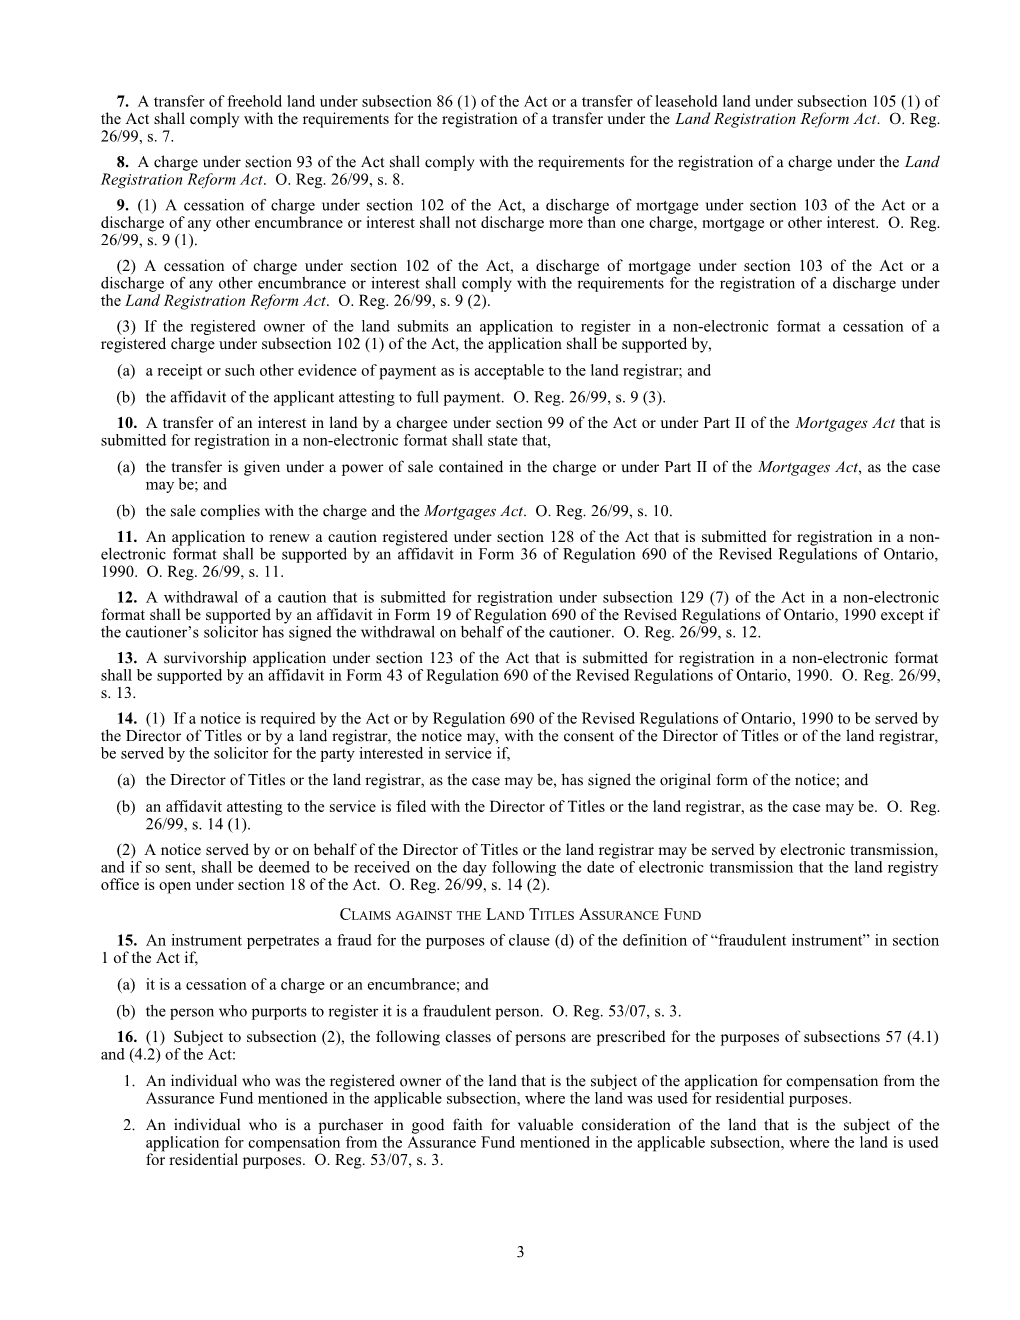 Land Titles Act - O. Reg. 26/99